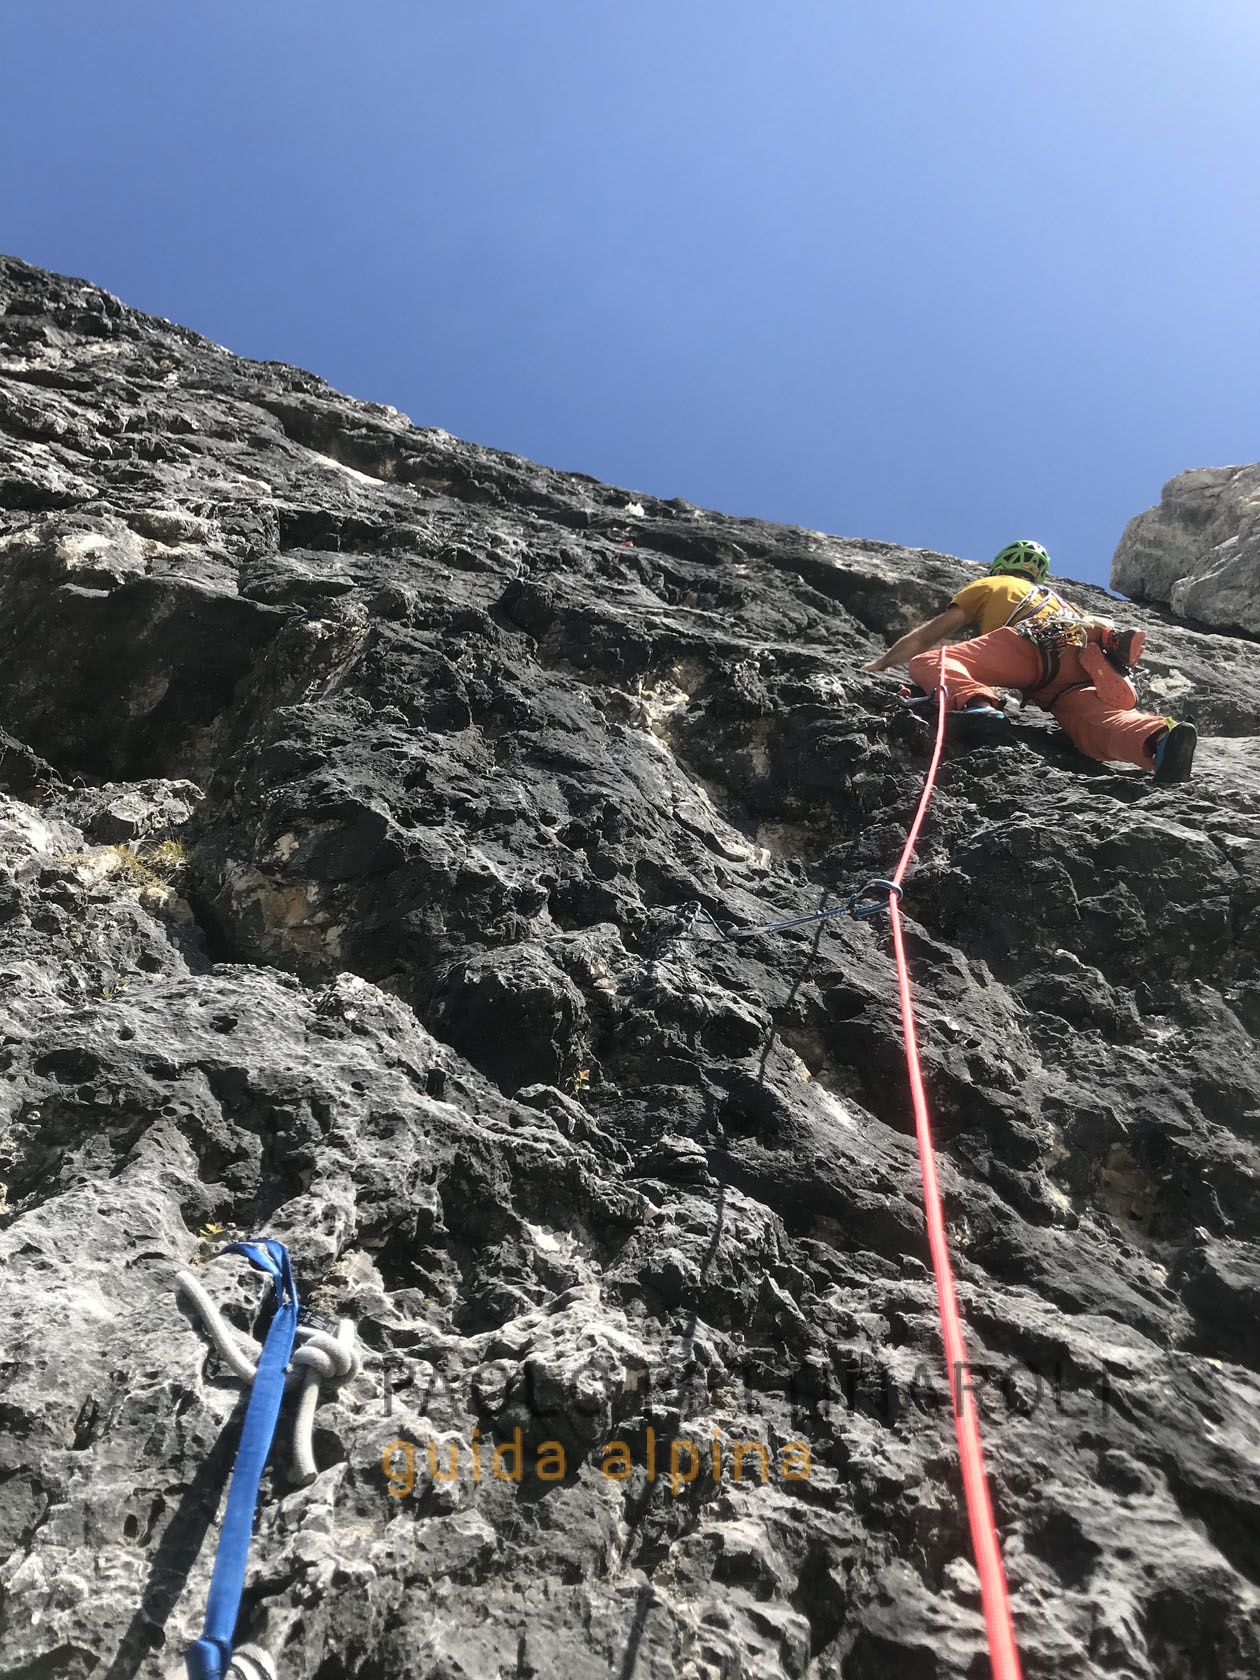 dolomiti - 4 di 6-arrampicata_paolo pettinaroli guida alpina